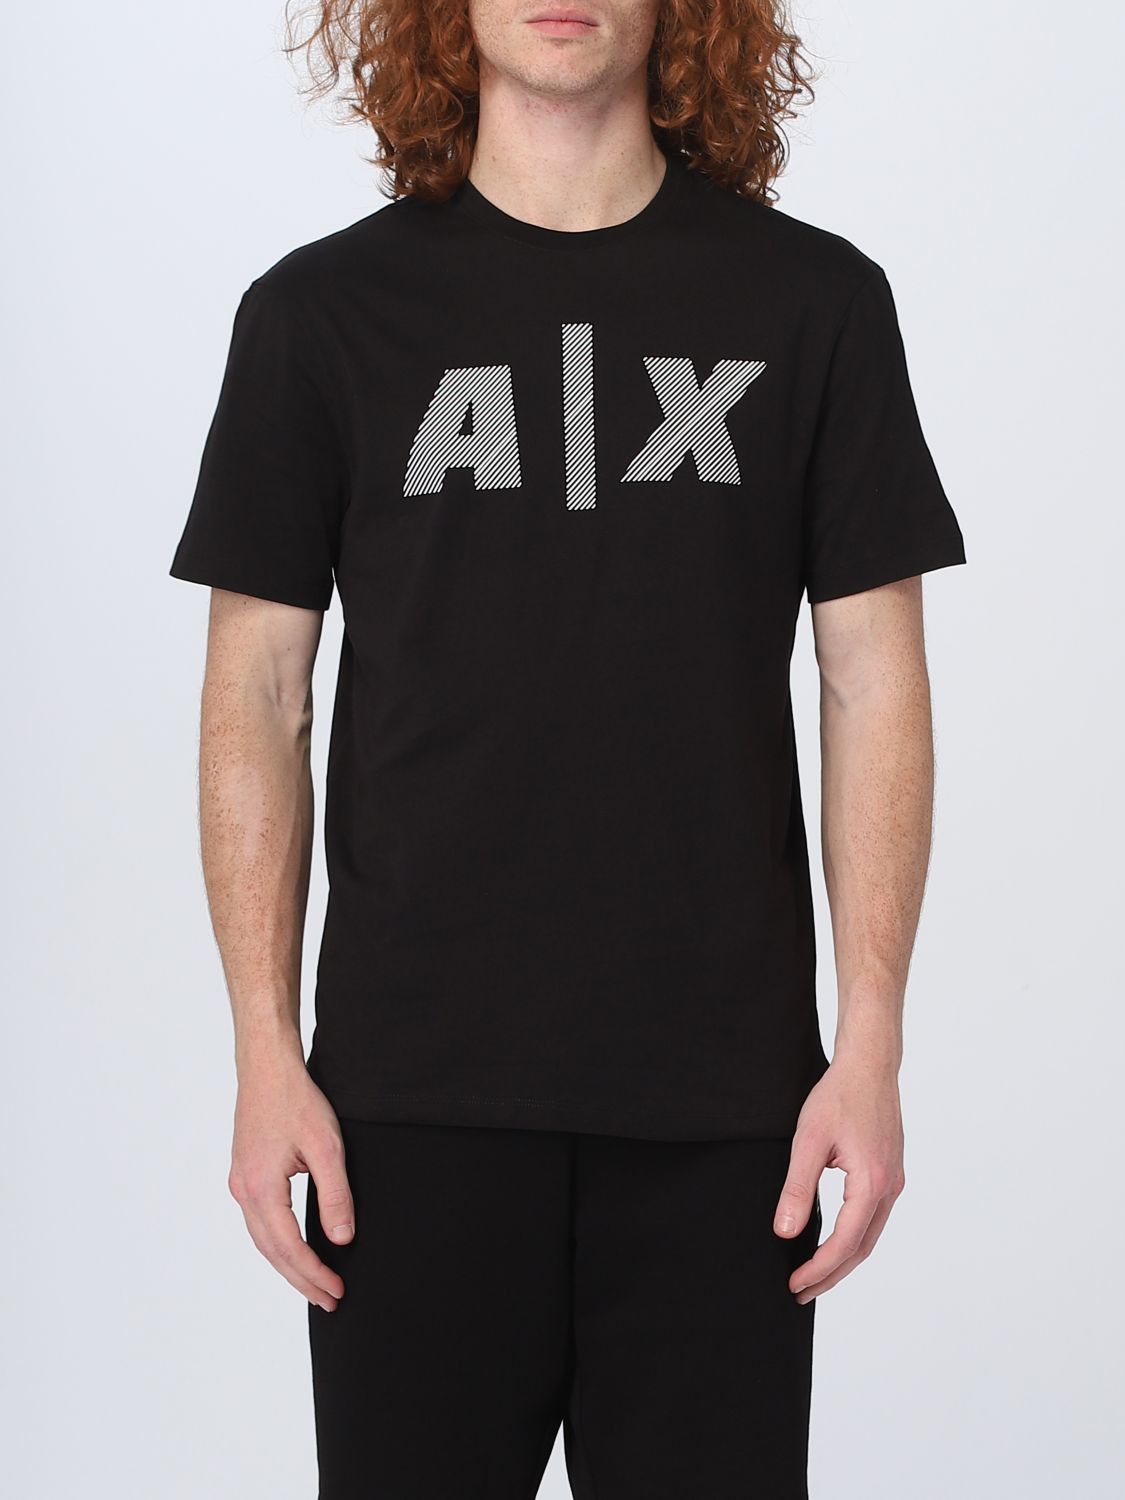 Armani Exchange T-shirt  Men Color Black